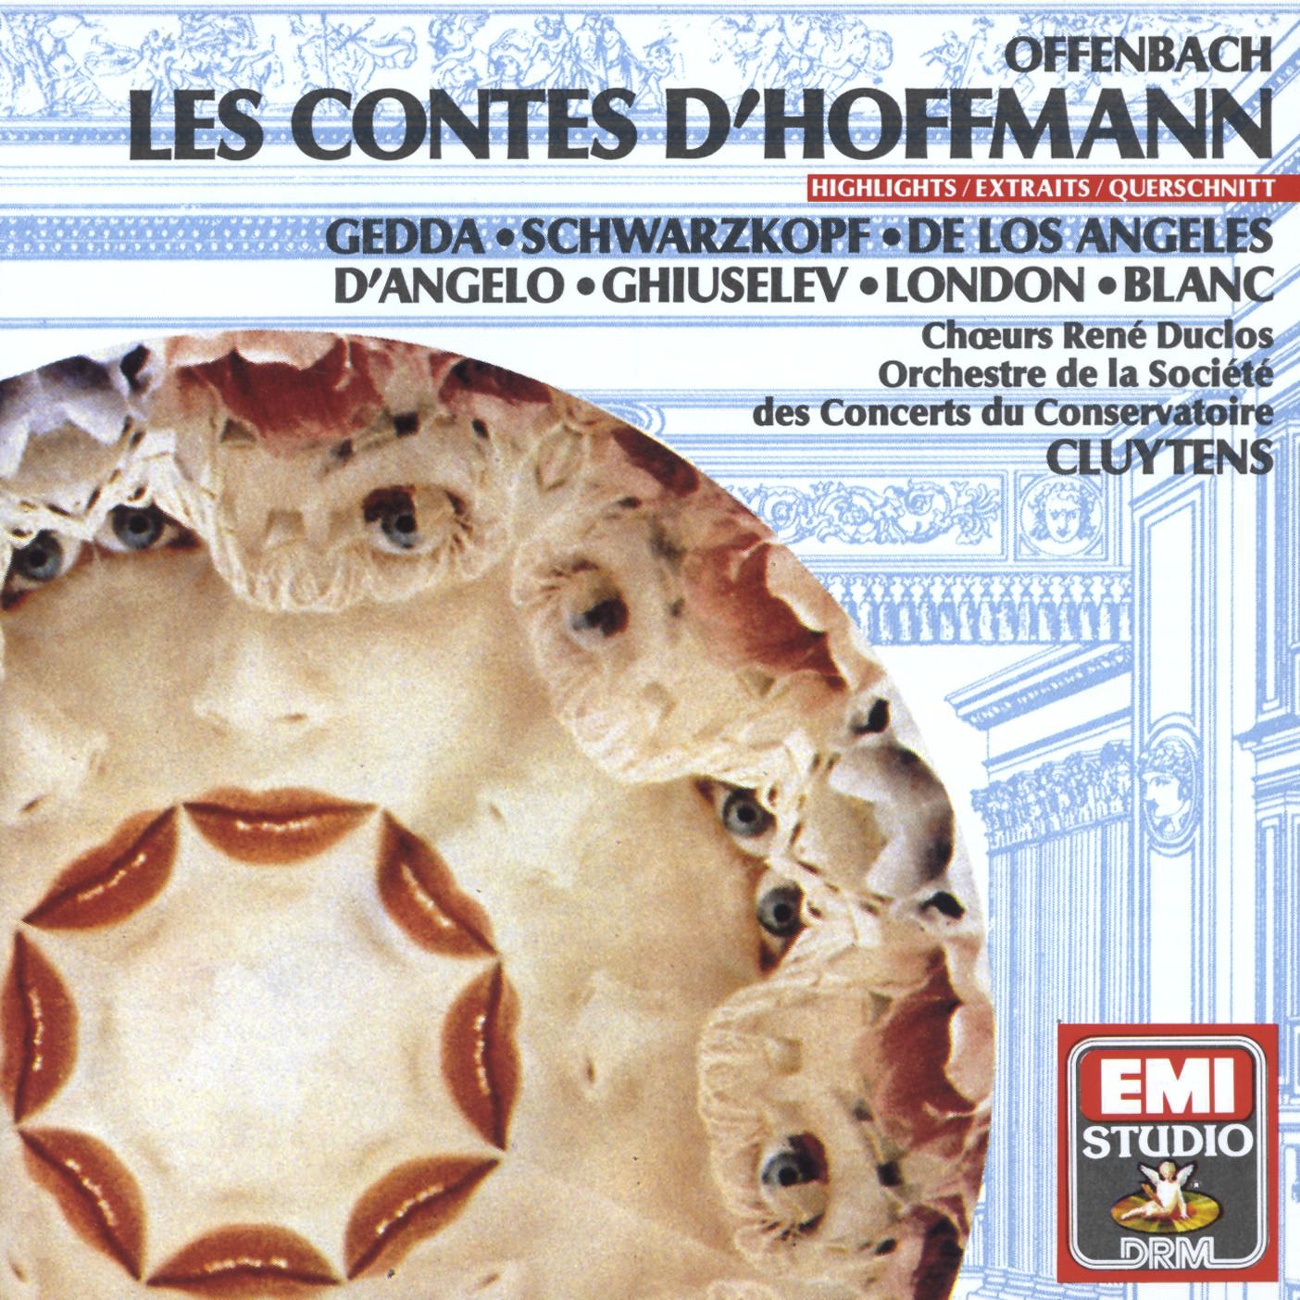 Les Contes d'Hoffmann (1989 Digital Remaster), QUATRIEME ACTE/ACT FOUR/VIERTER AKT, Premier Tableau/Scene One/Erste Szene: Entr'